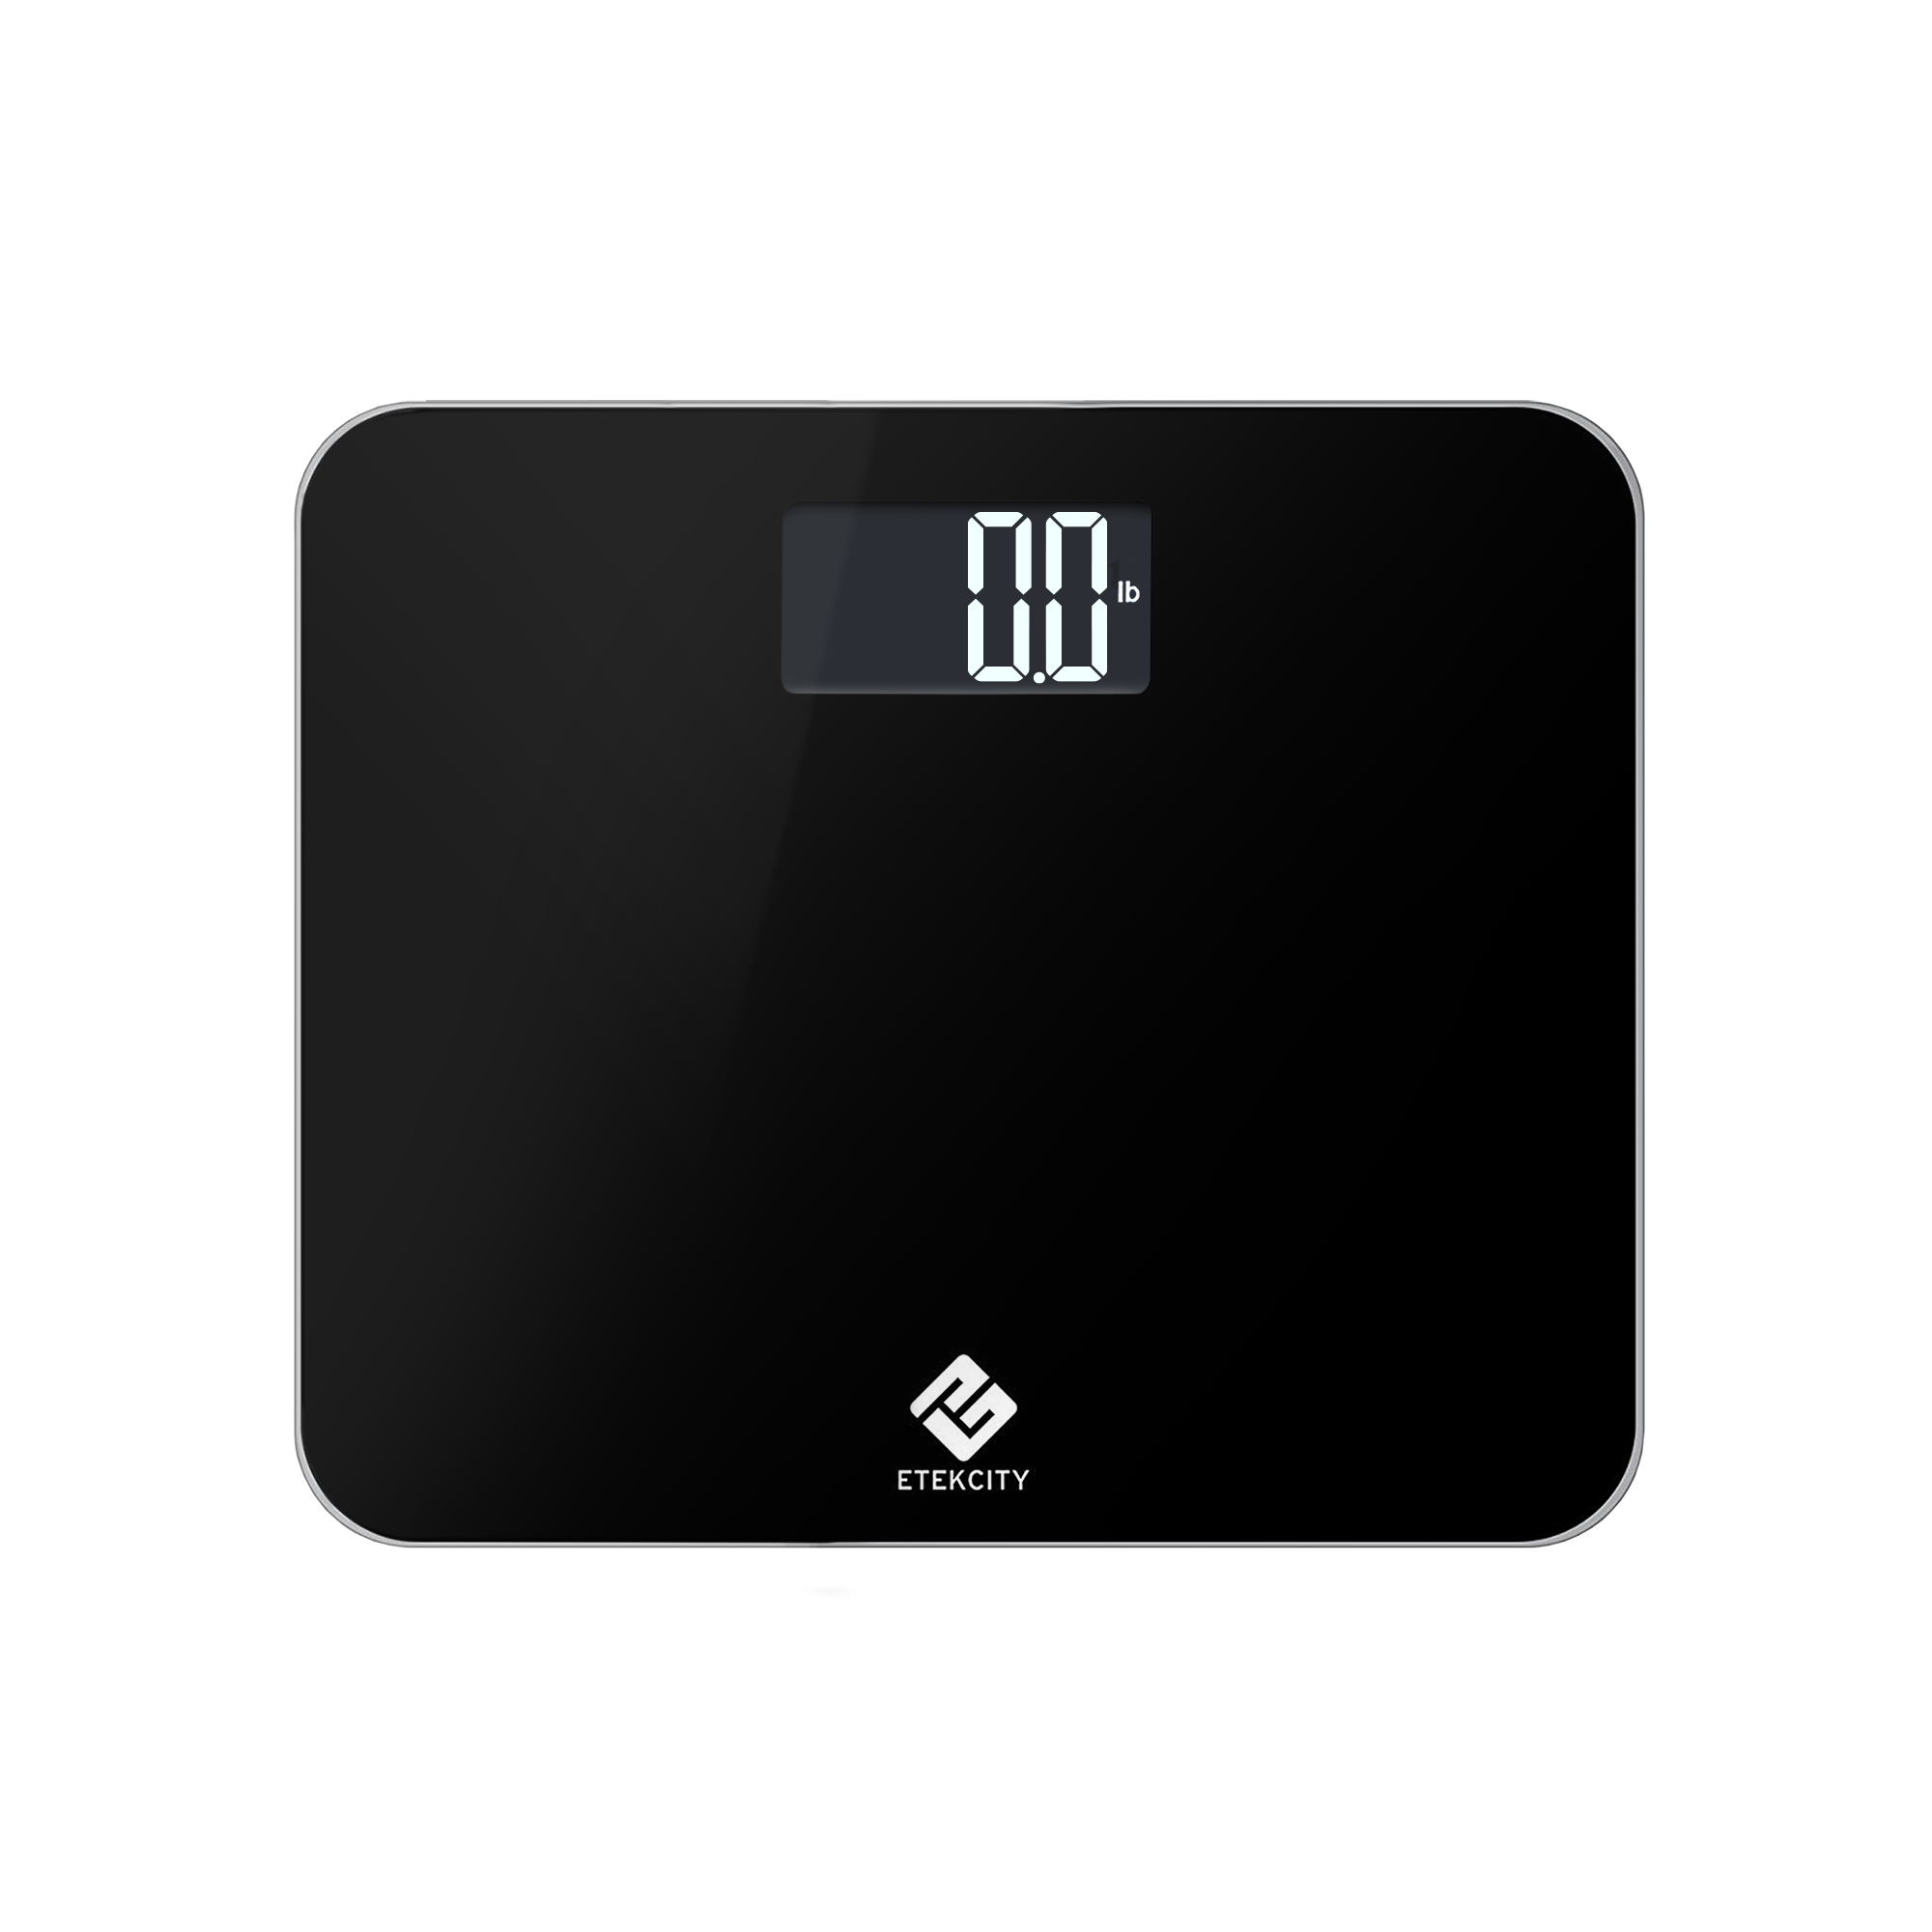 Digital Bathroom Scale in Black